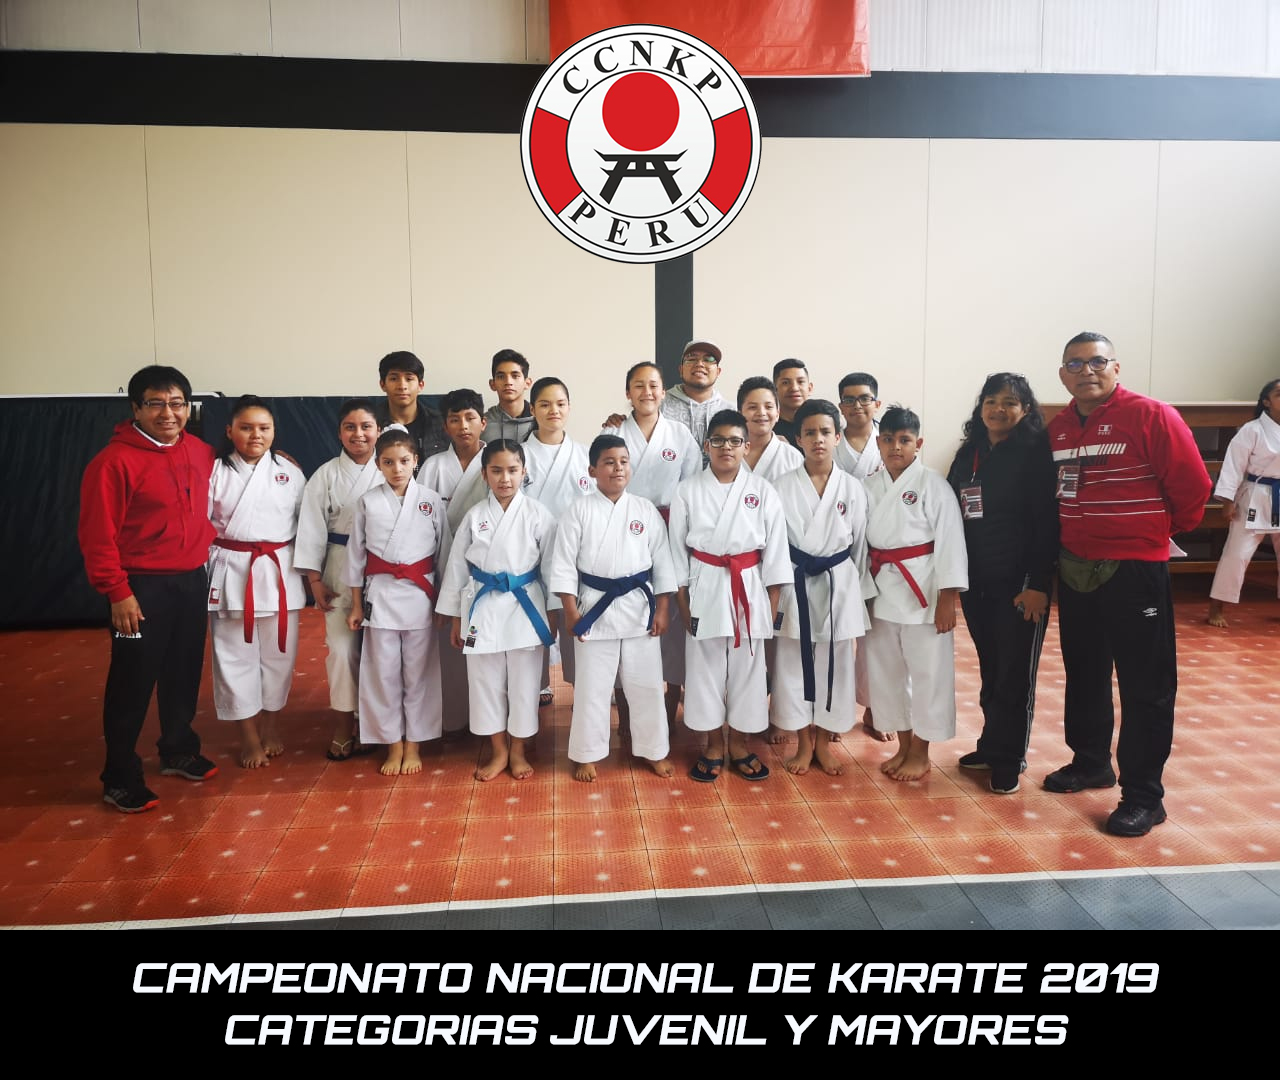 Campeonato Nacional de Karate - Categorias Juvenil y Mayores